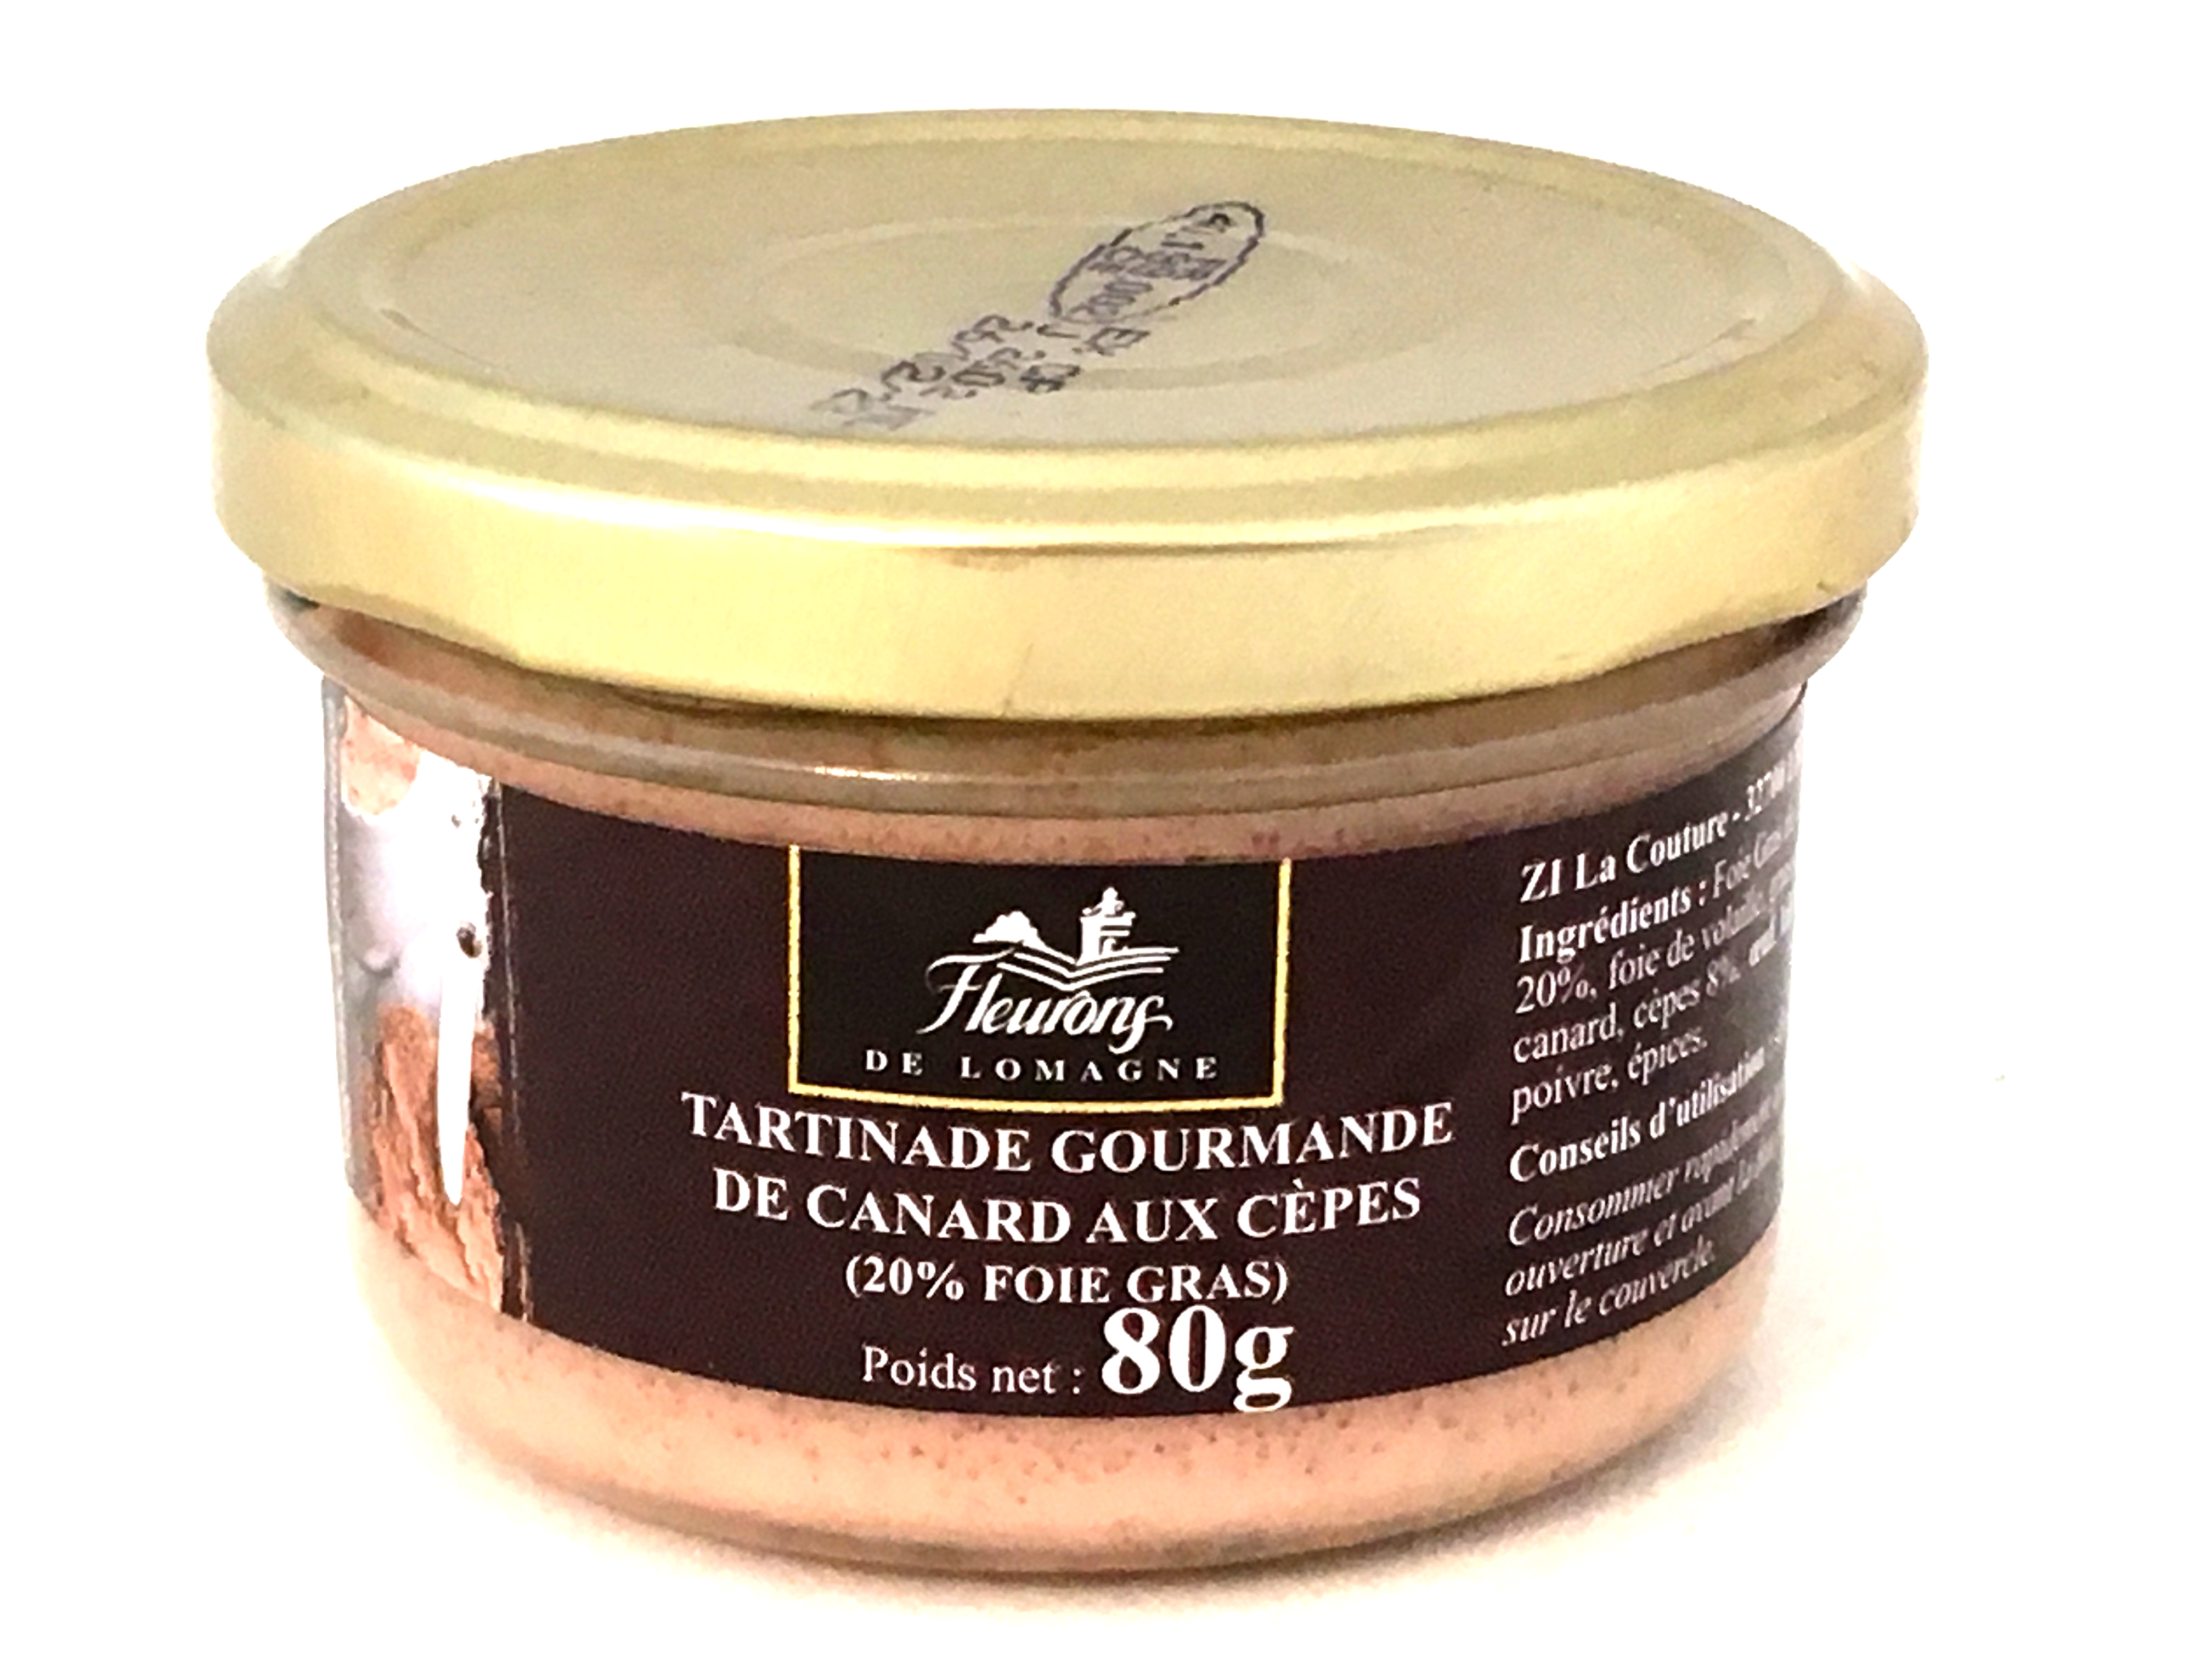 Tartinade gourmande de canard aux cèpes (20% Foie gras) 80g